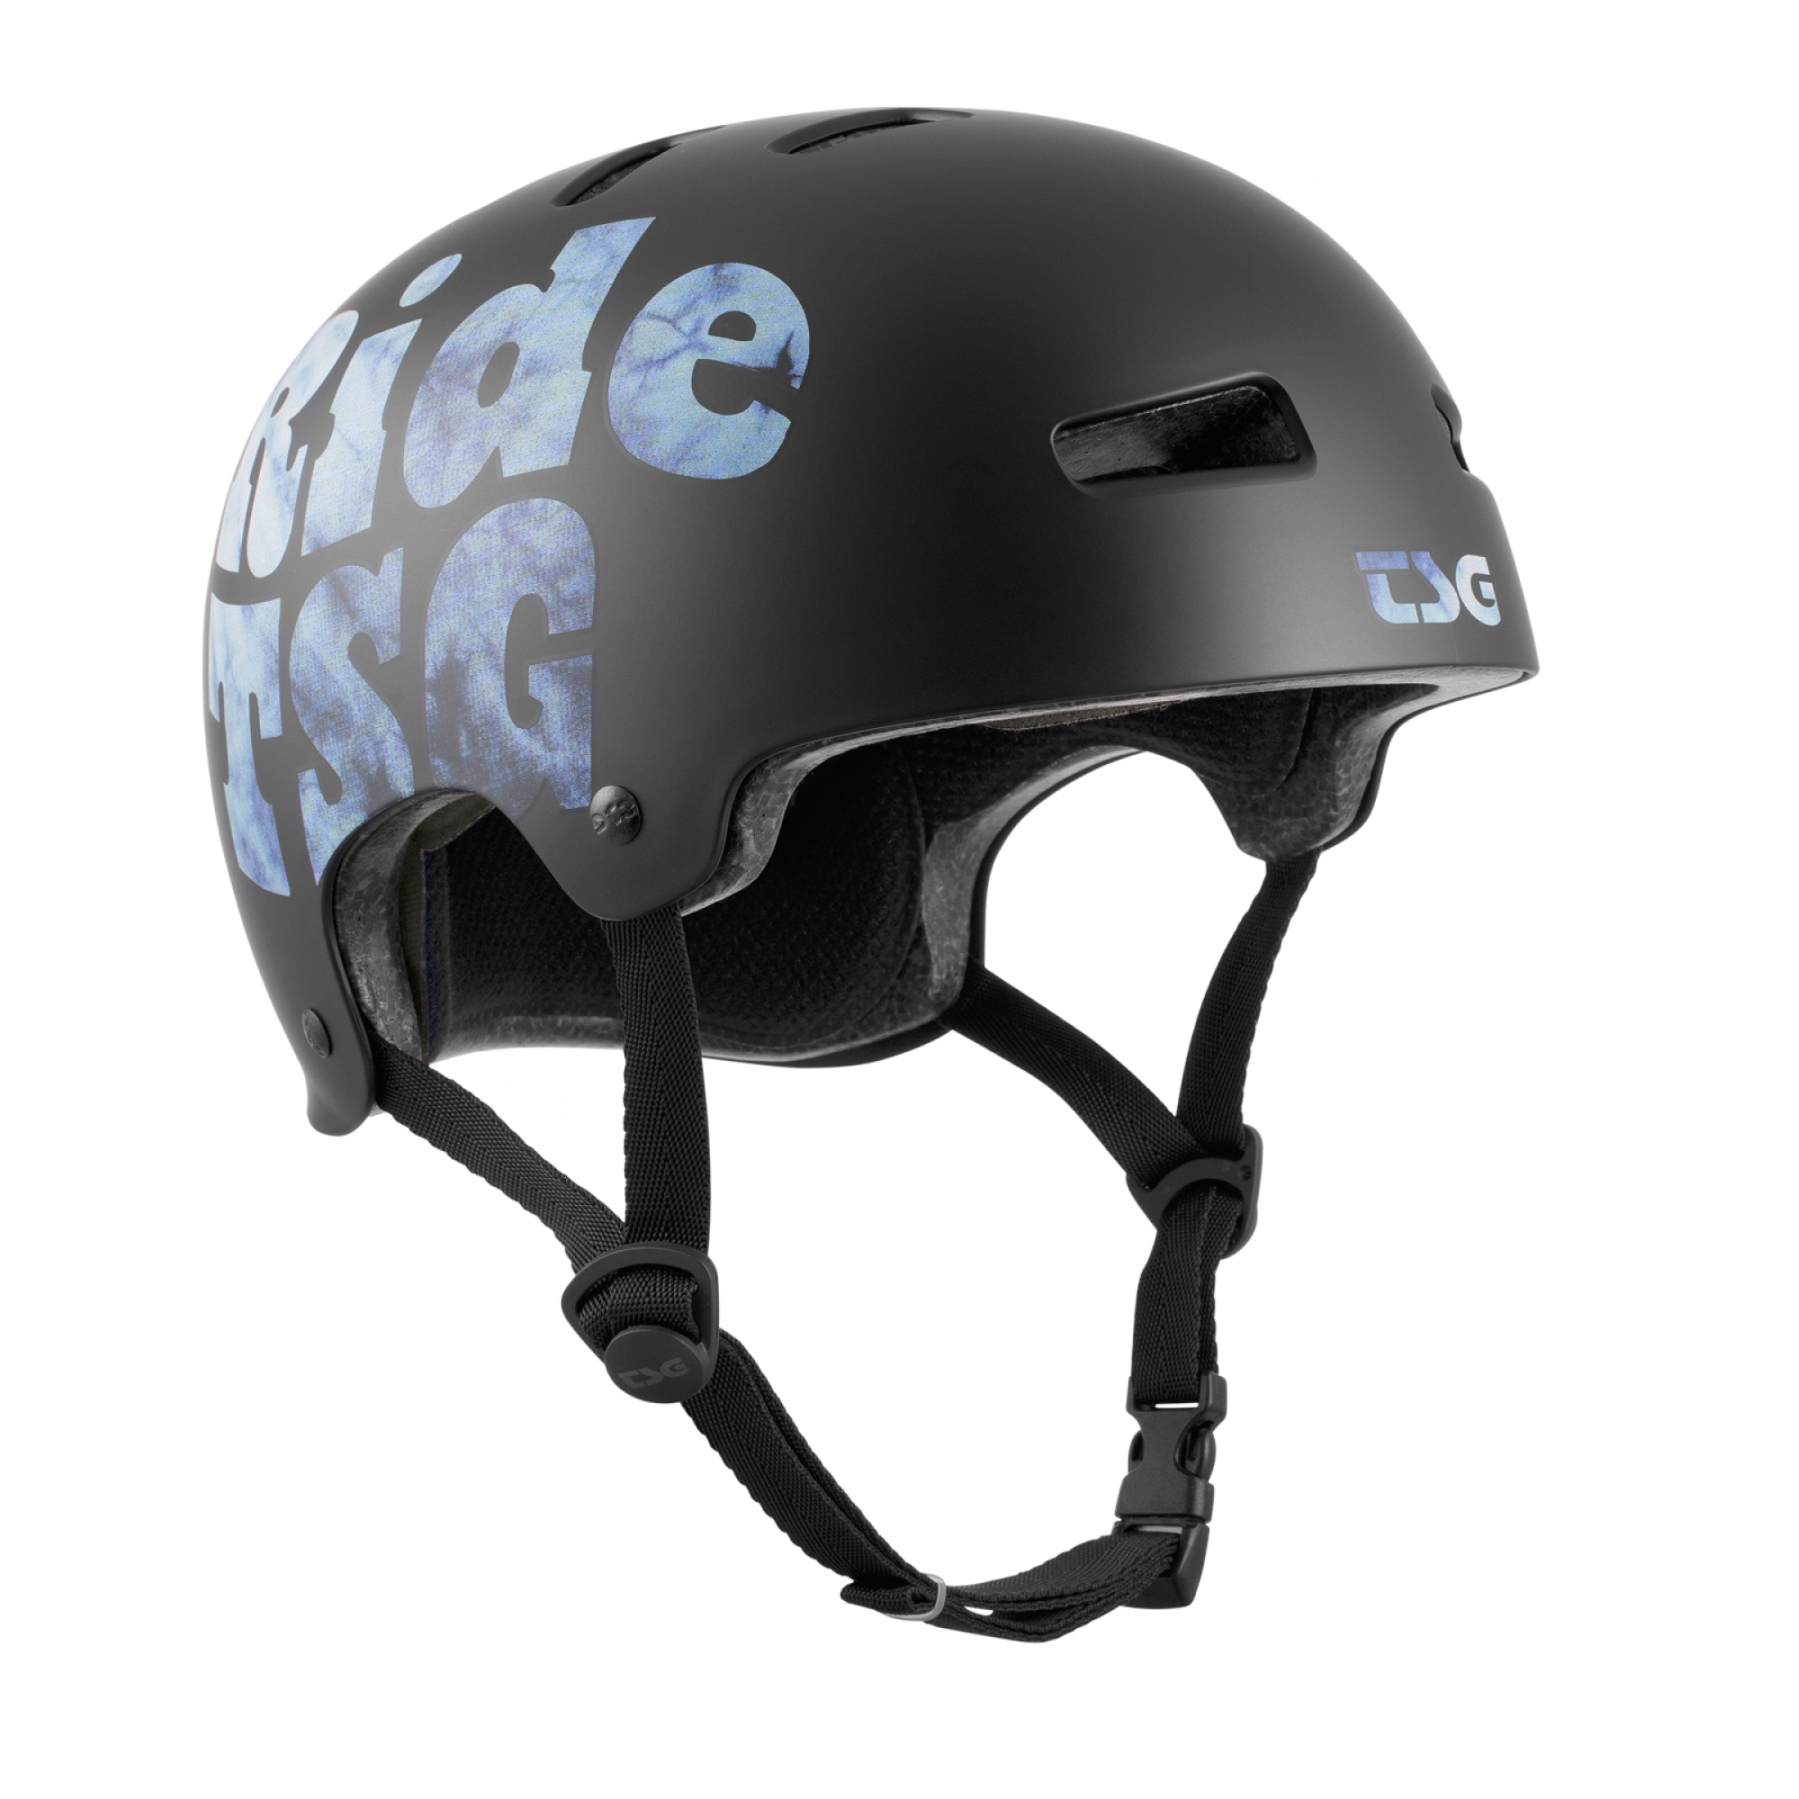 Produktbild von TSG Evolution Graphic Design Helm - ride-or-dye